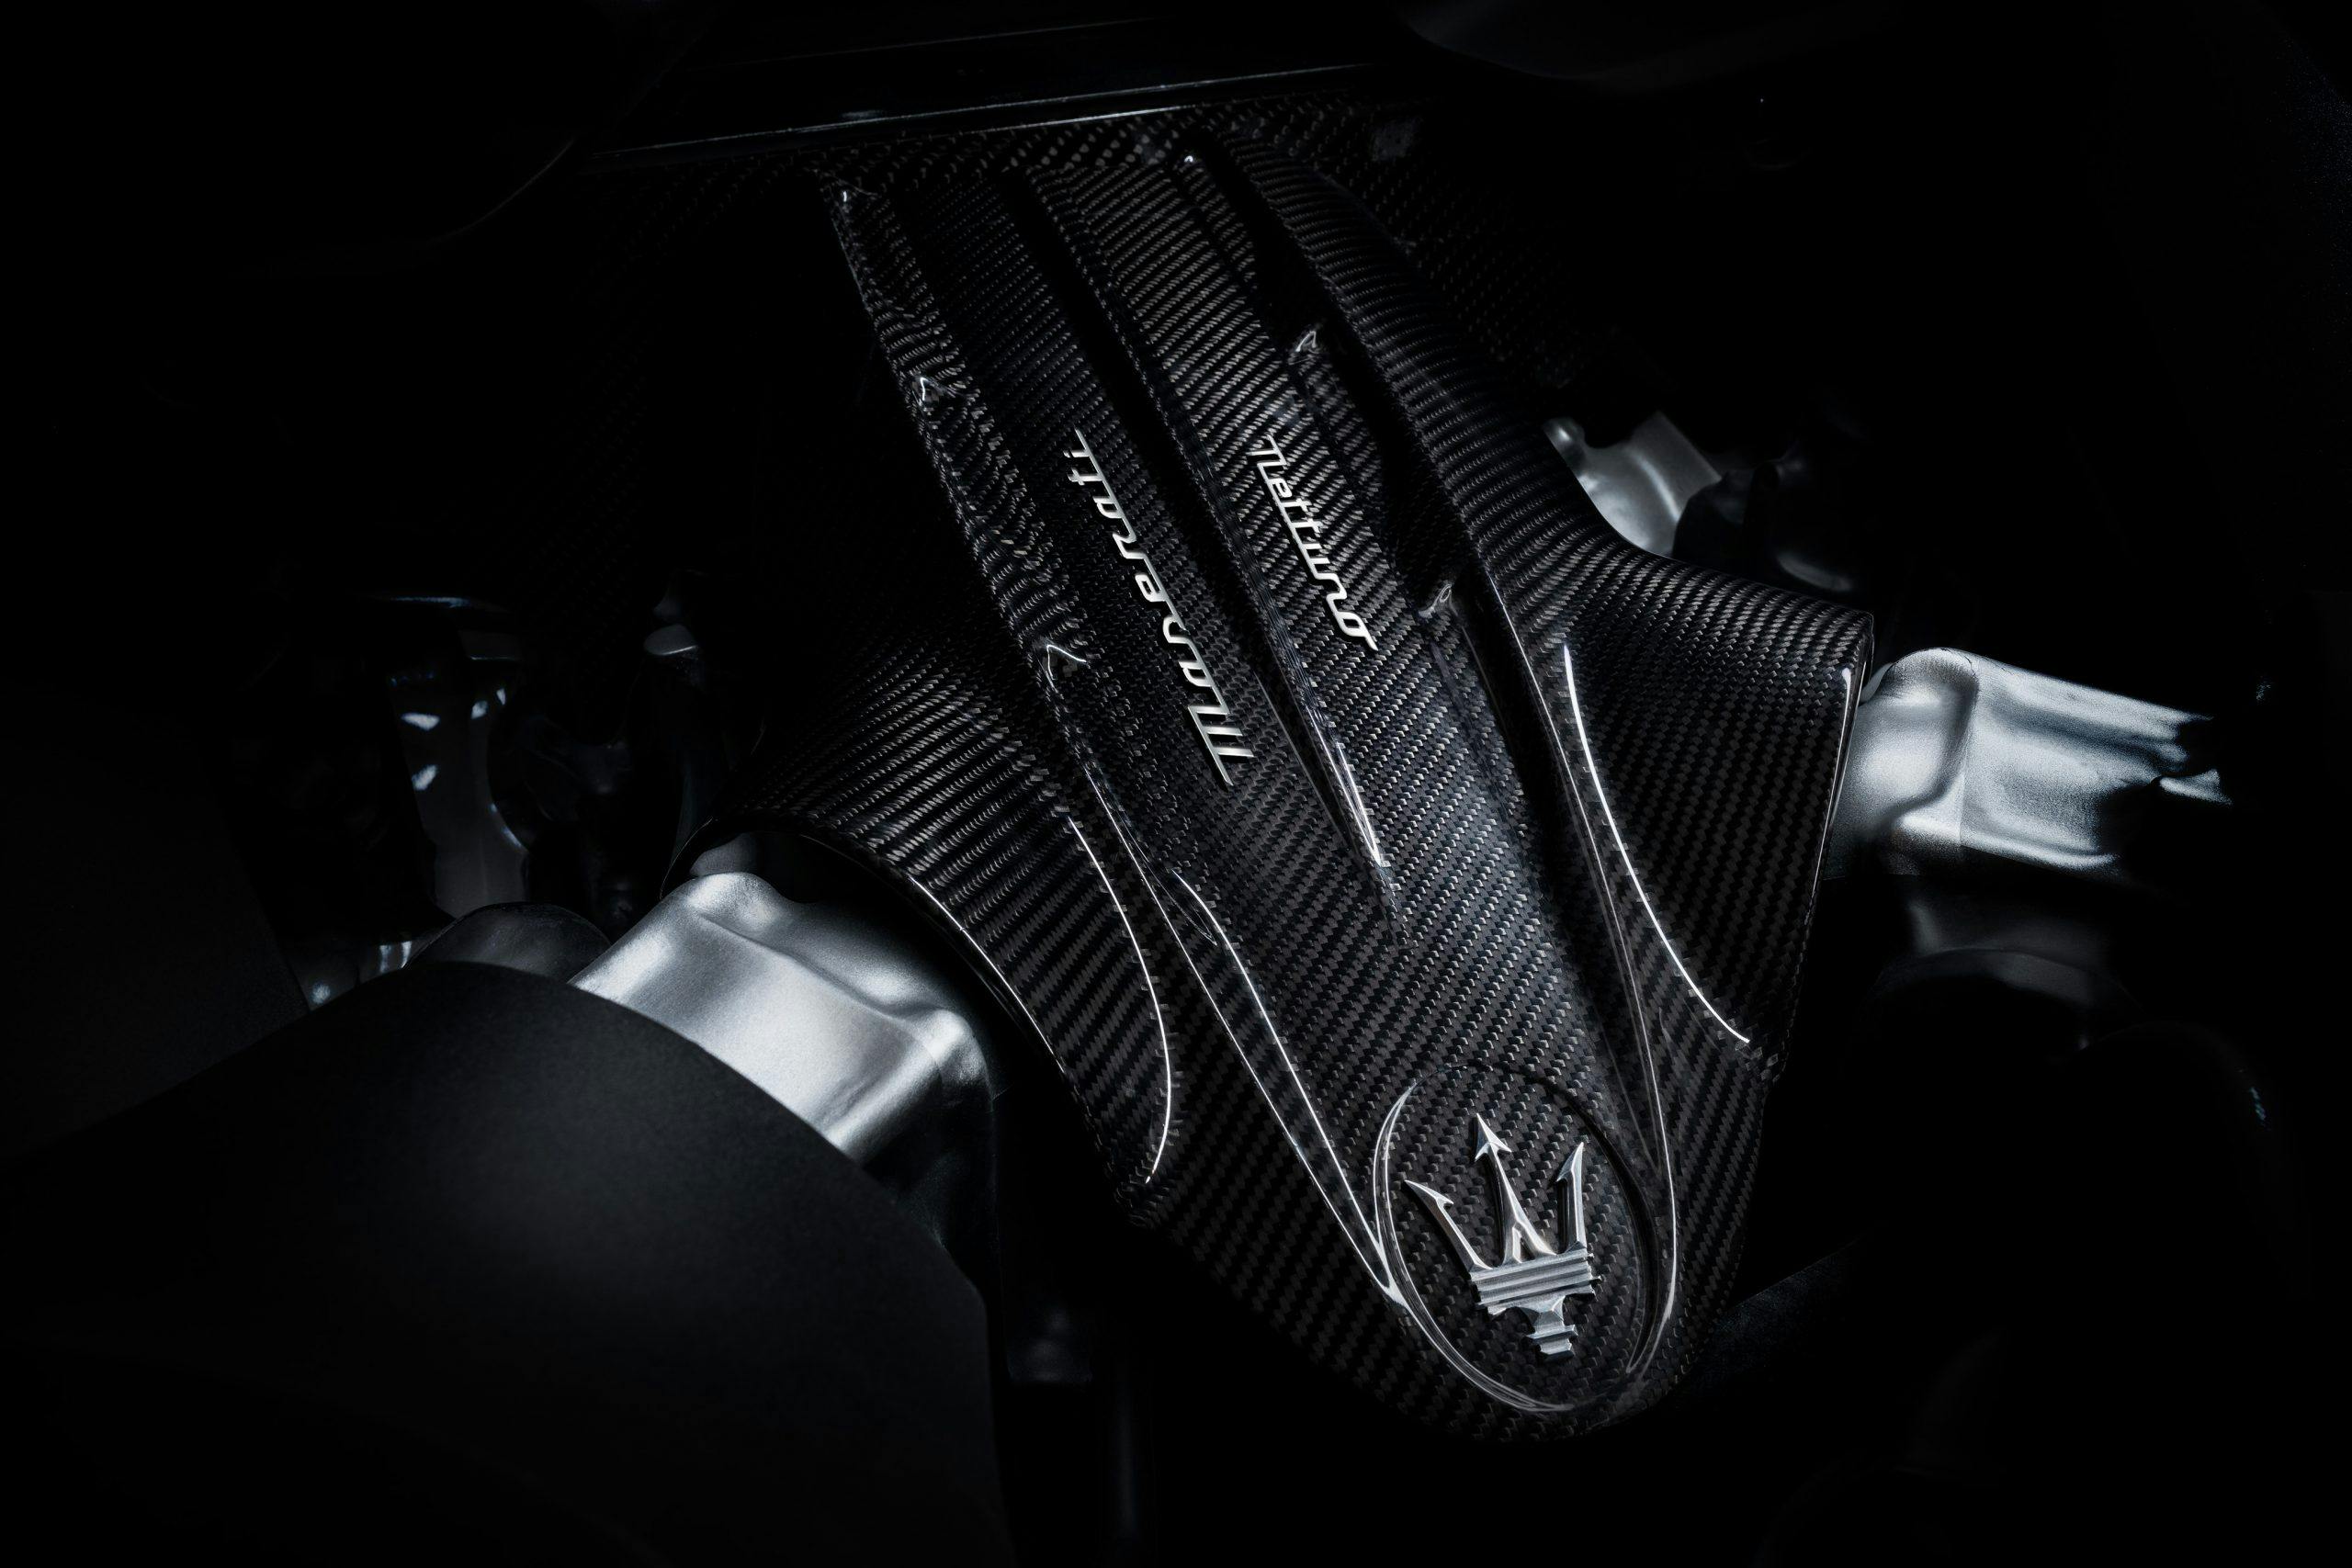 Maserati MC20 Nettuno V-6 engine